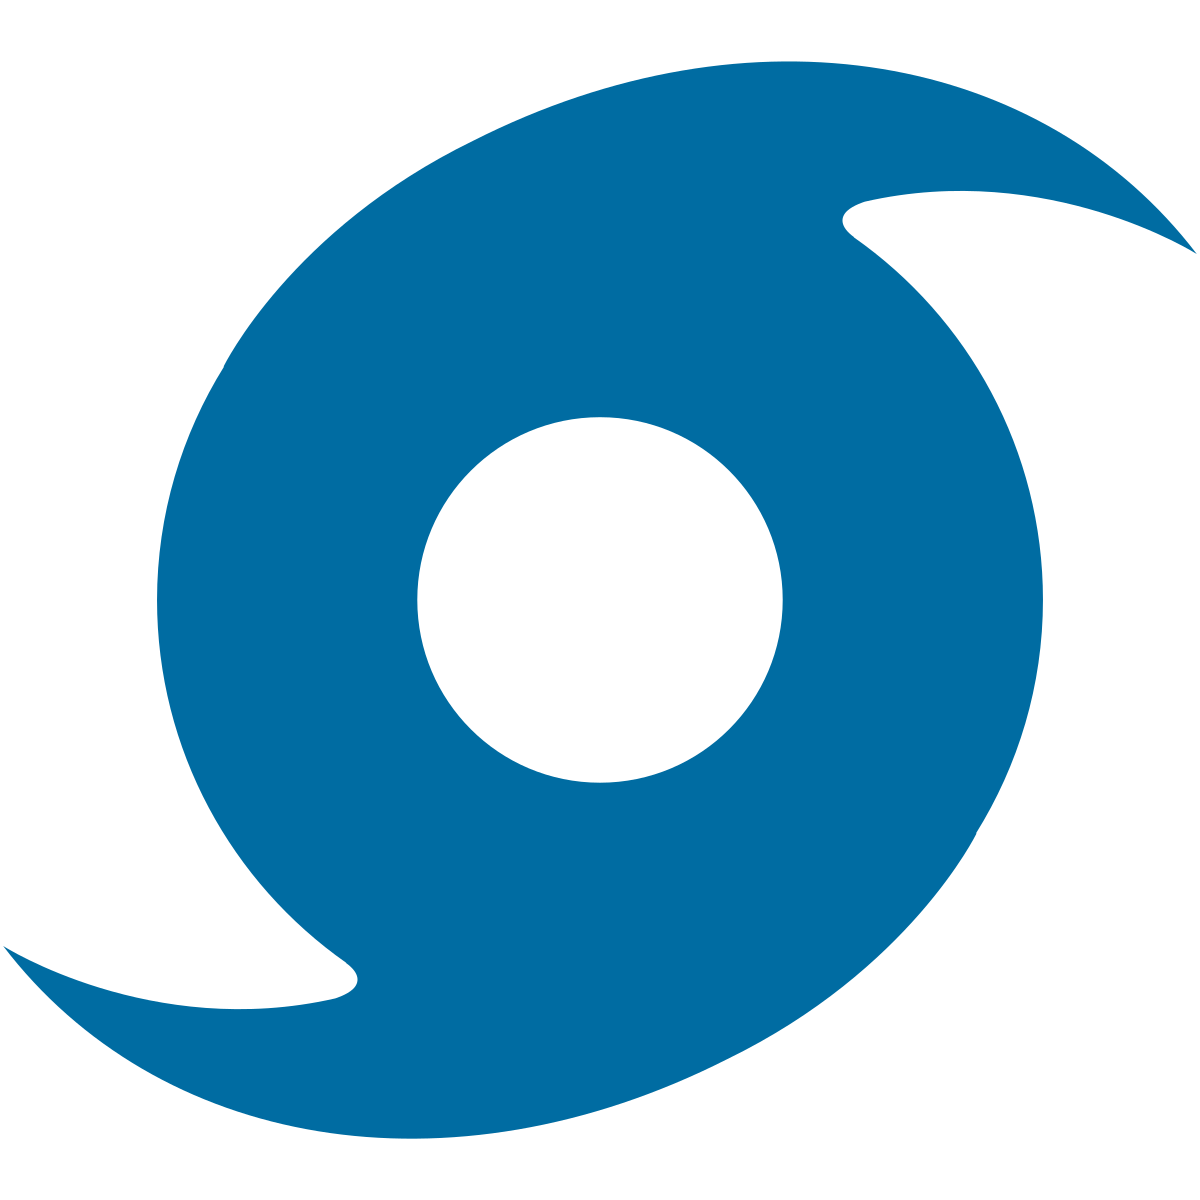 File:Emoji u1f004.svg - Wikipedia